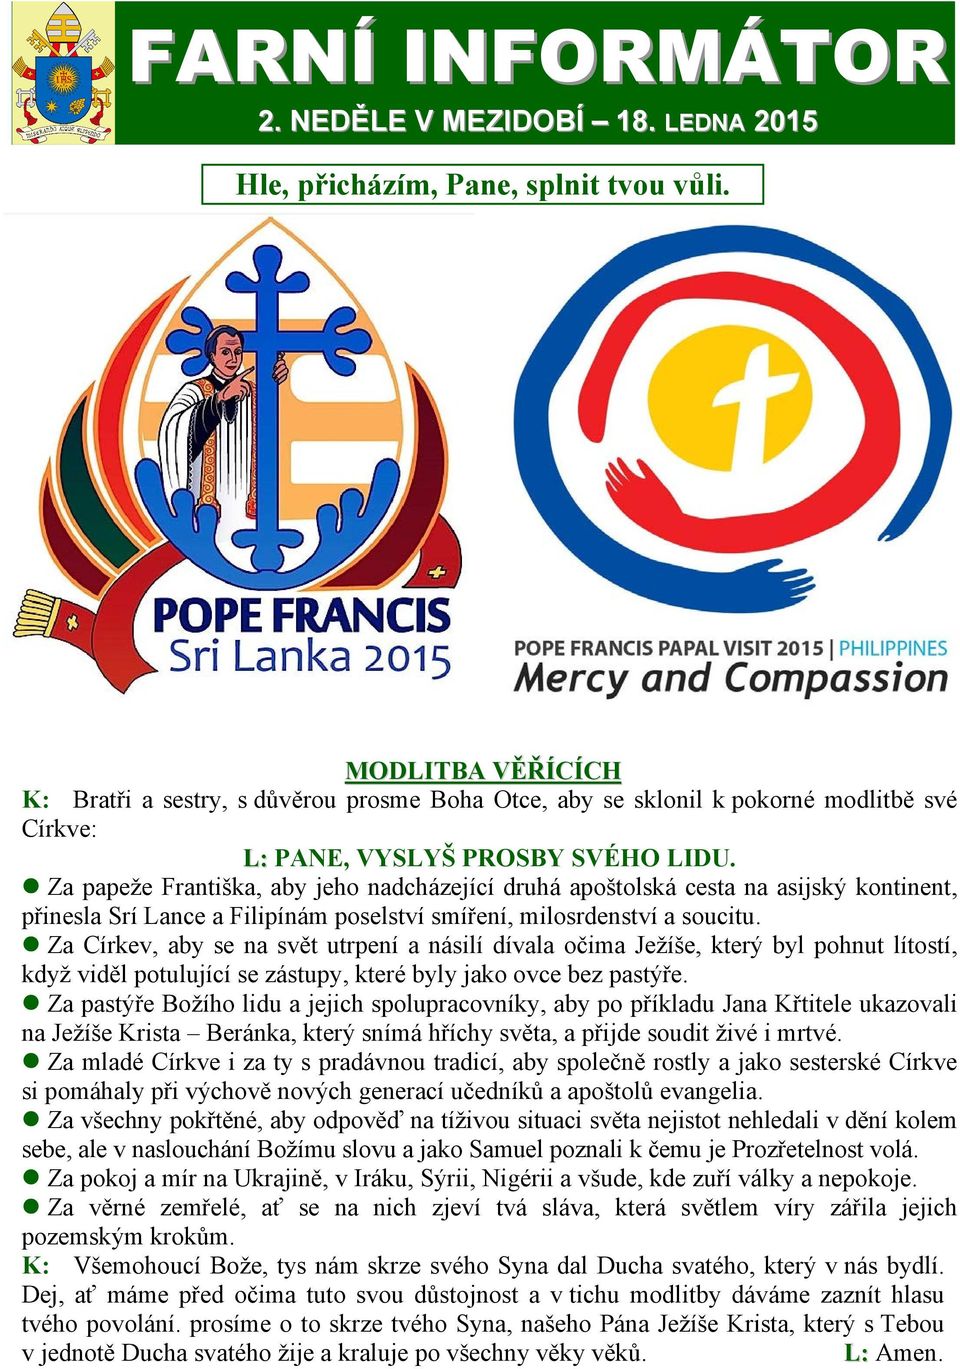 Za papeže Františka, aby jeho nadcházející druhá apoštolská cesta na asijský kontinent, přinesla Srí Lance a Filipínám poselství smíření, milosrdenství a soucitu.